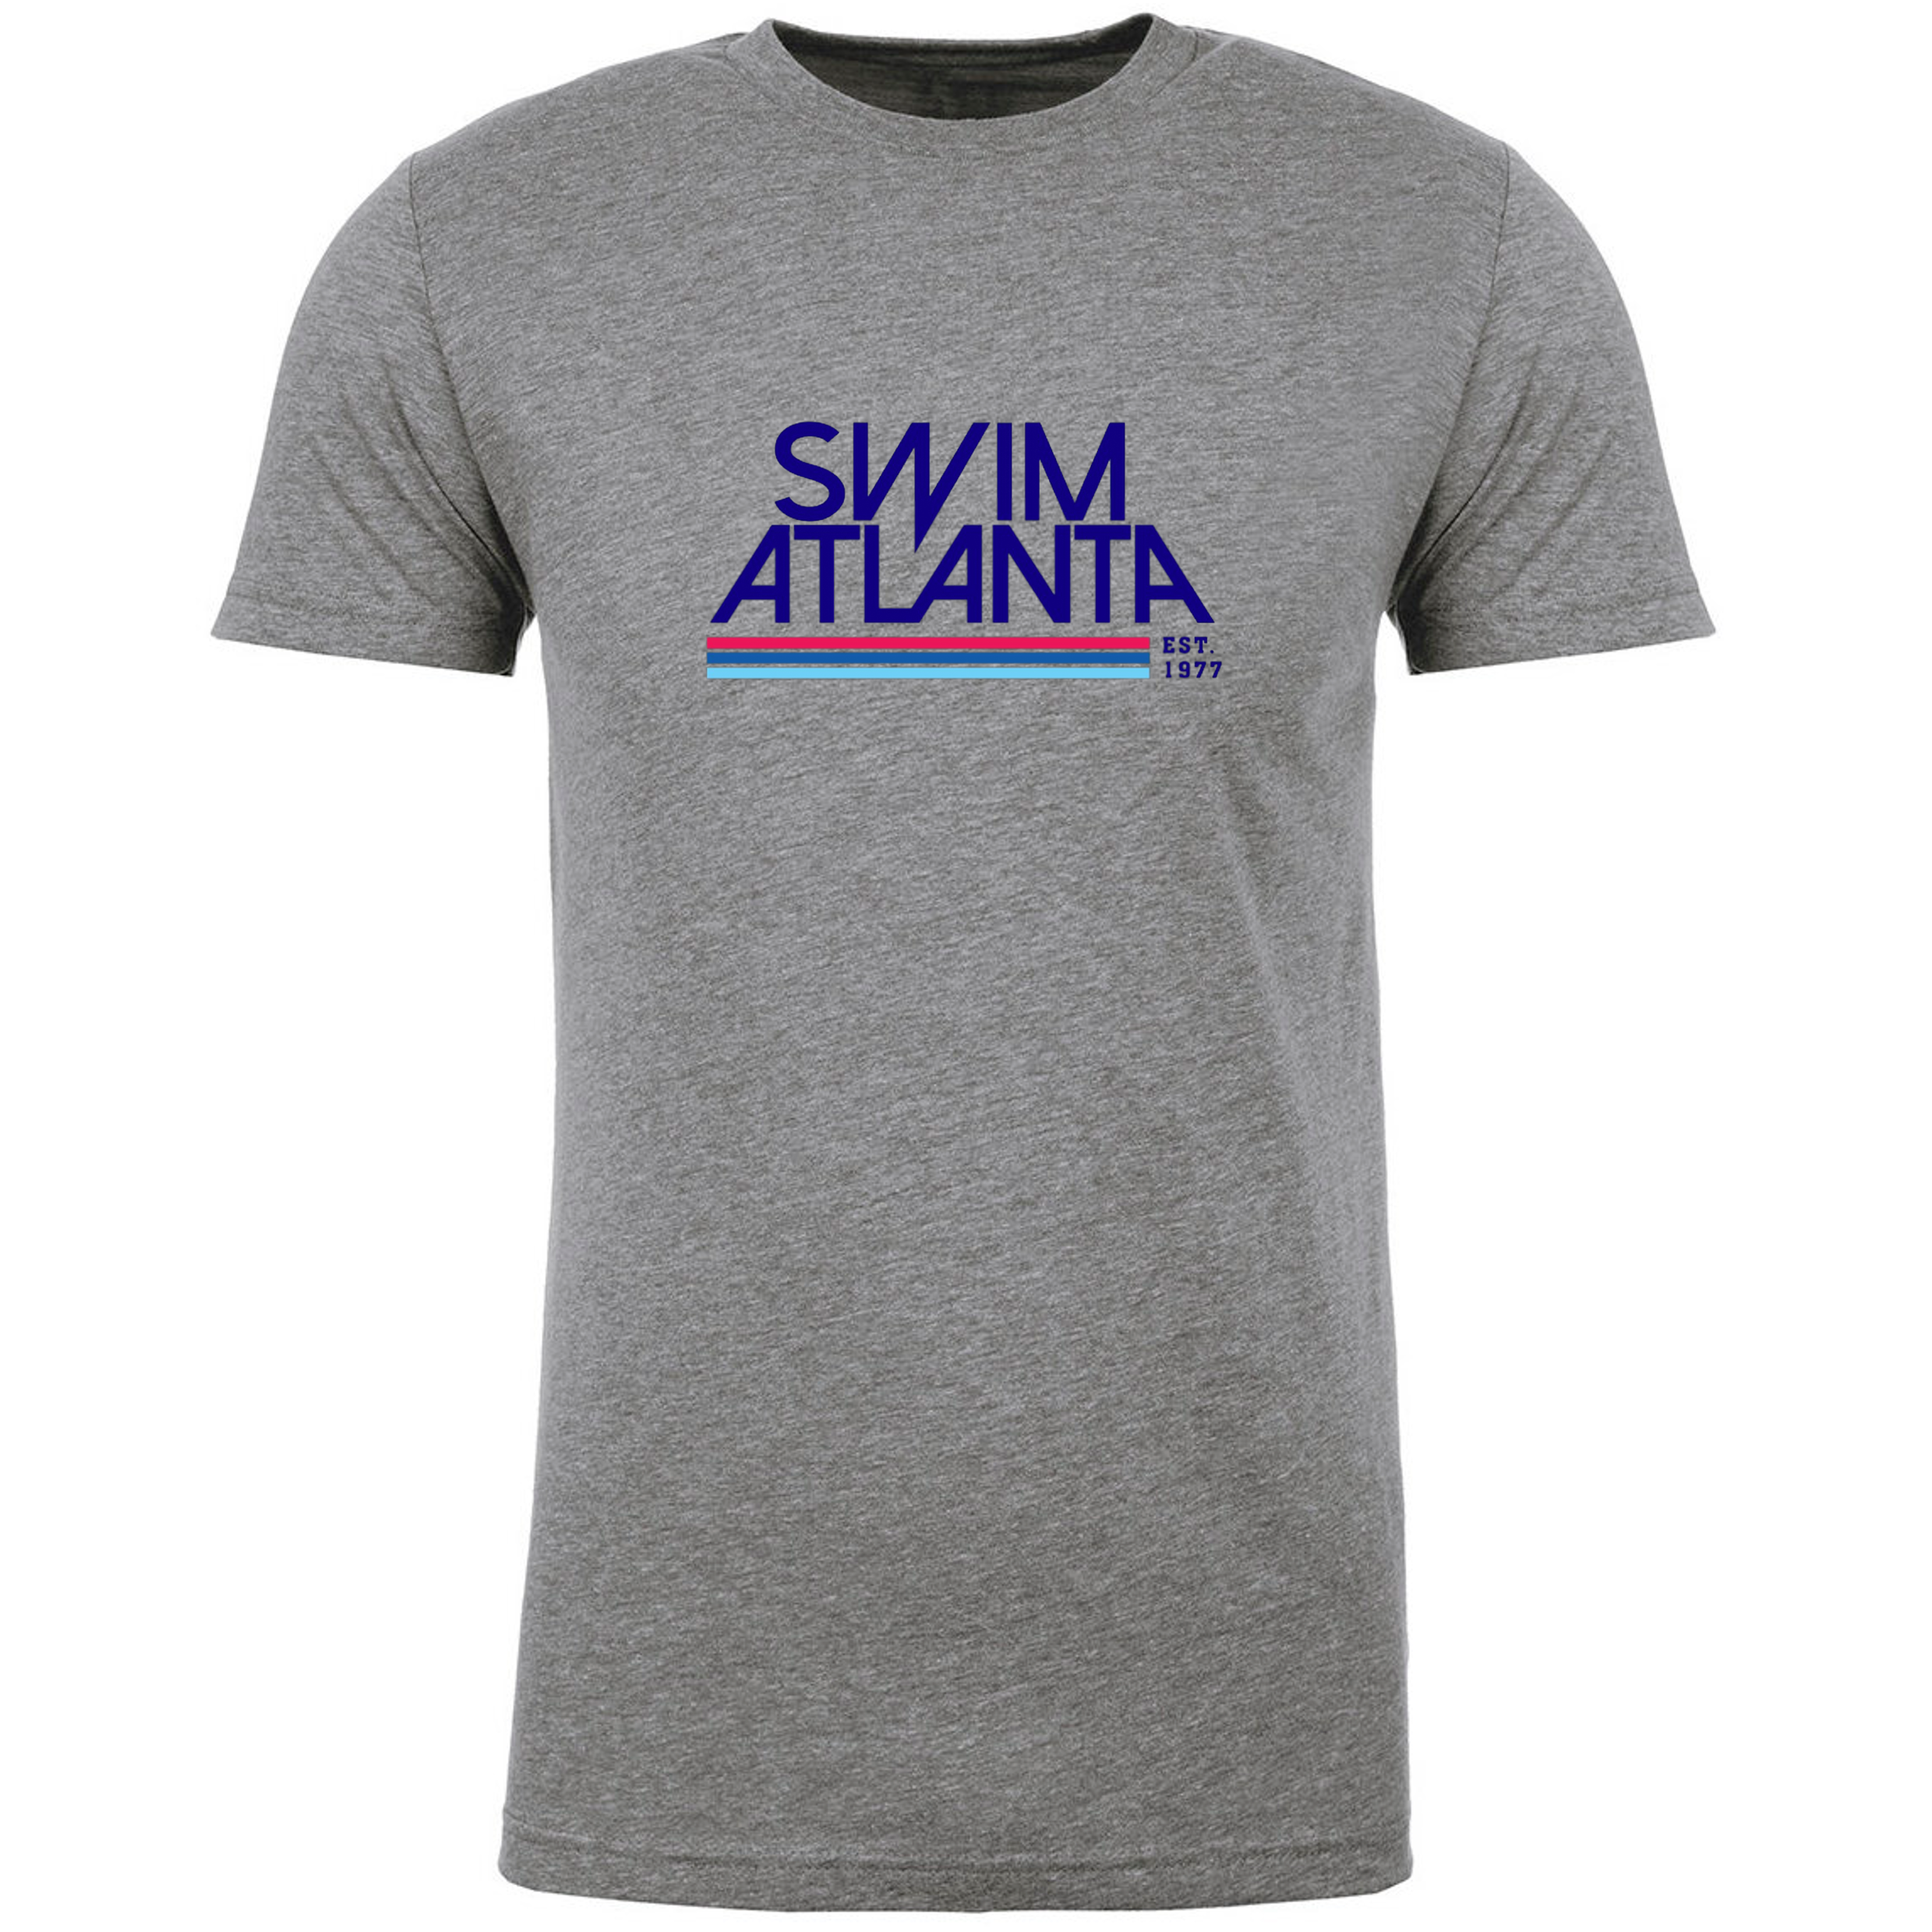 Team T-Shirt #2 - Swim Atlanta